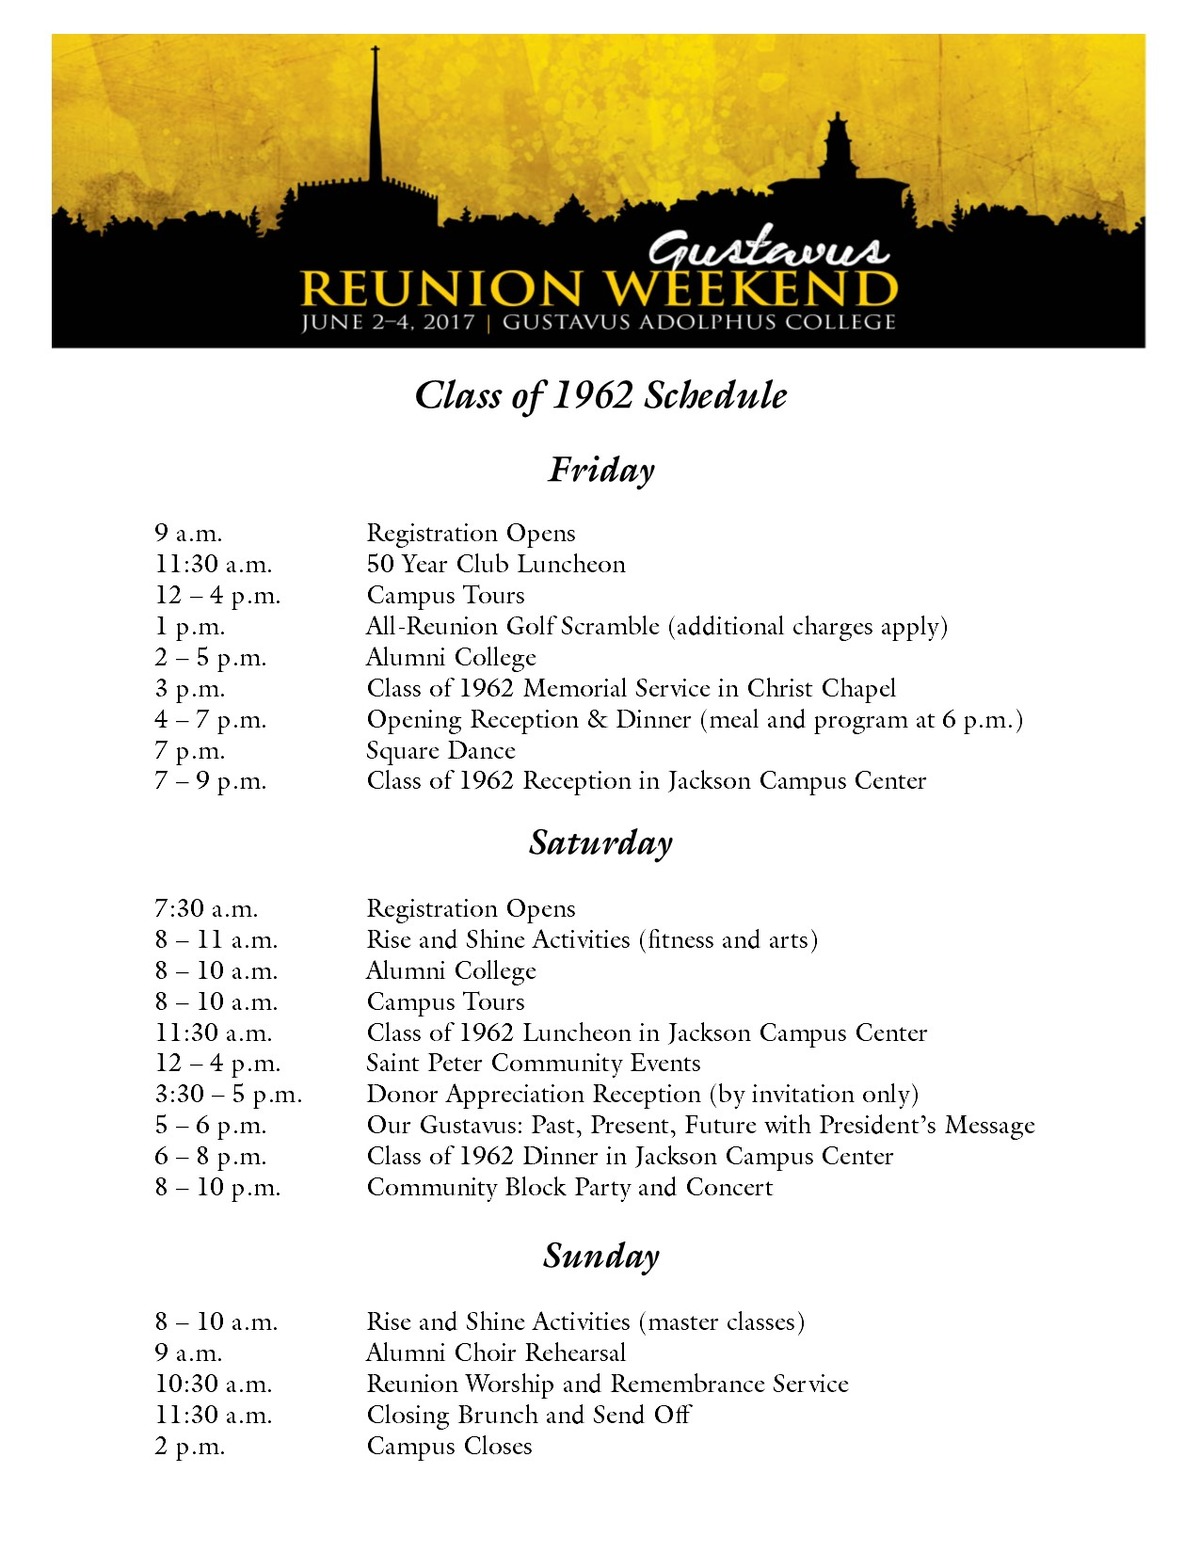 Class of 1962 Reunion Weekend Schedule